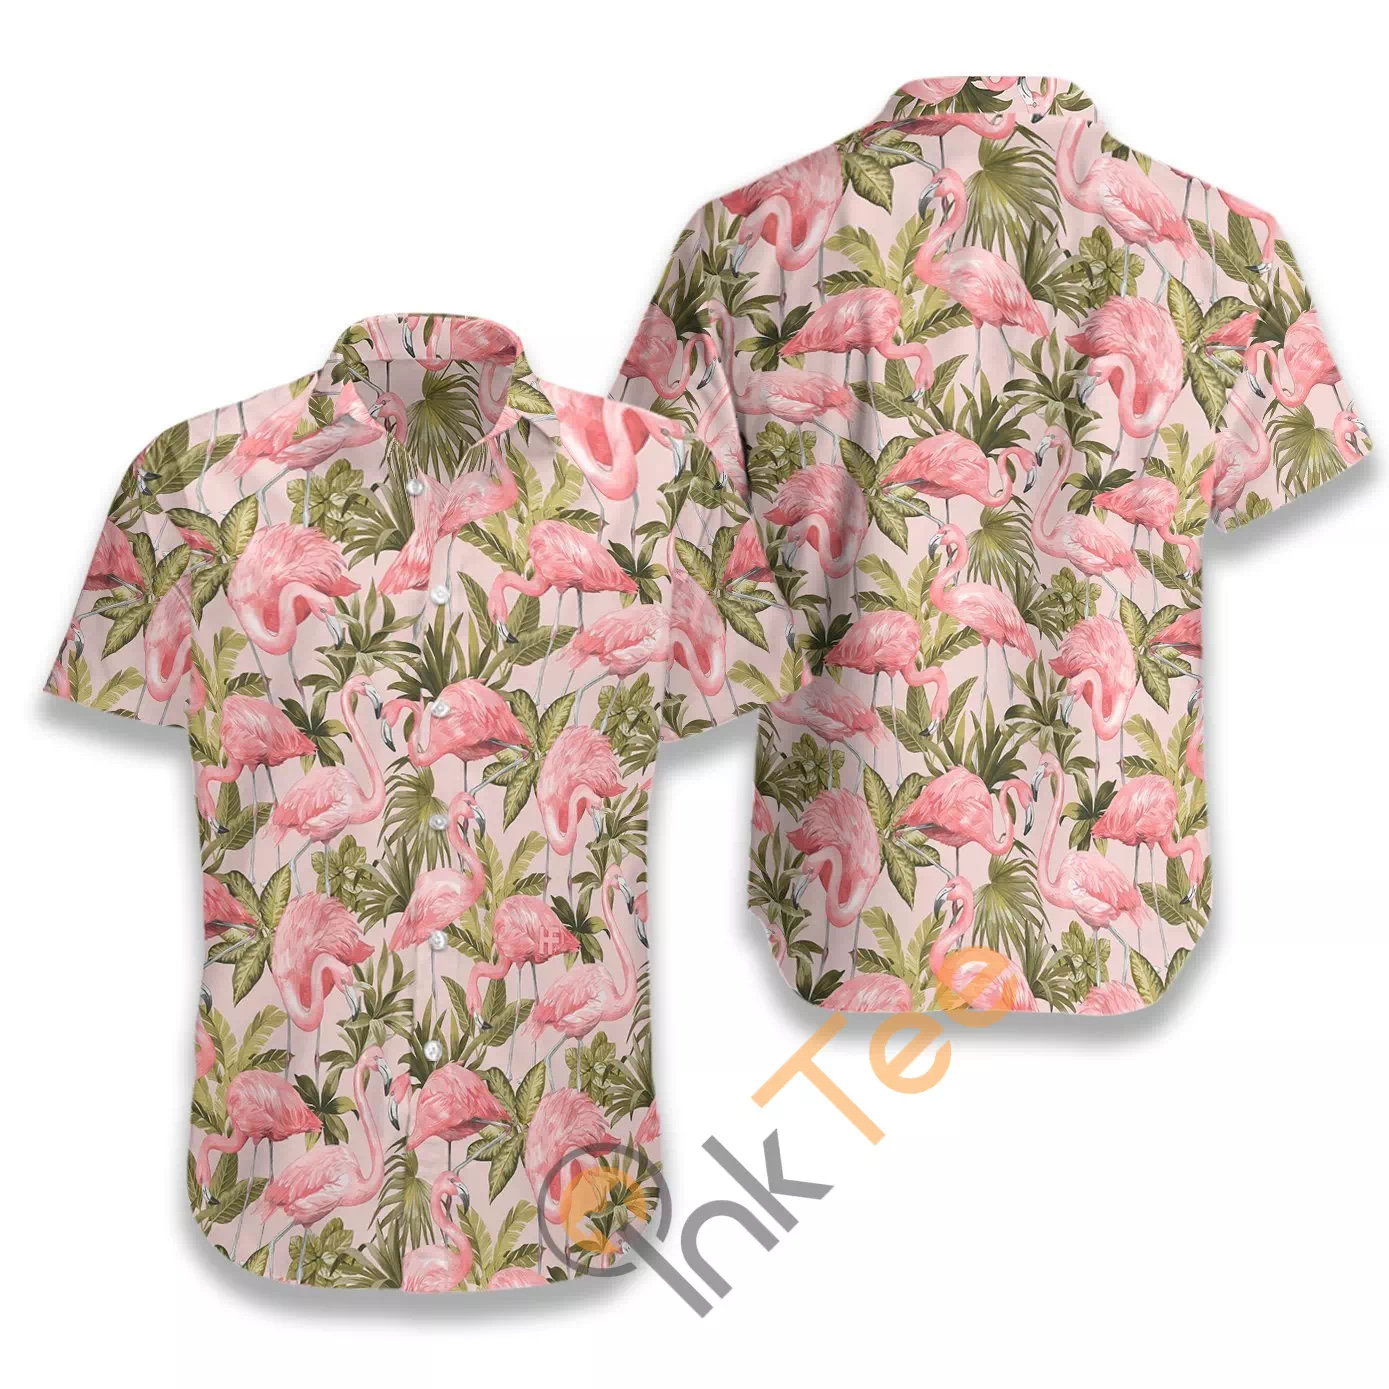 Tropical Flamingo 04 N444 Hawaiian shirts